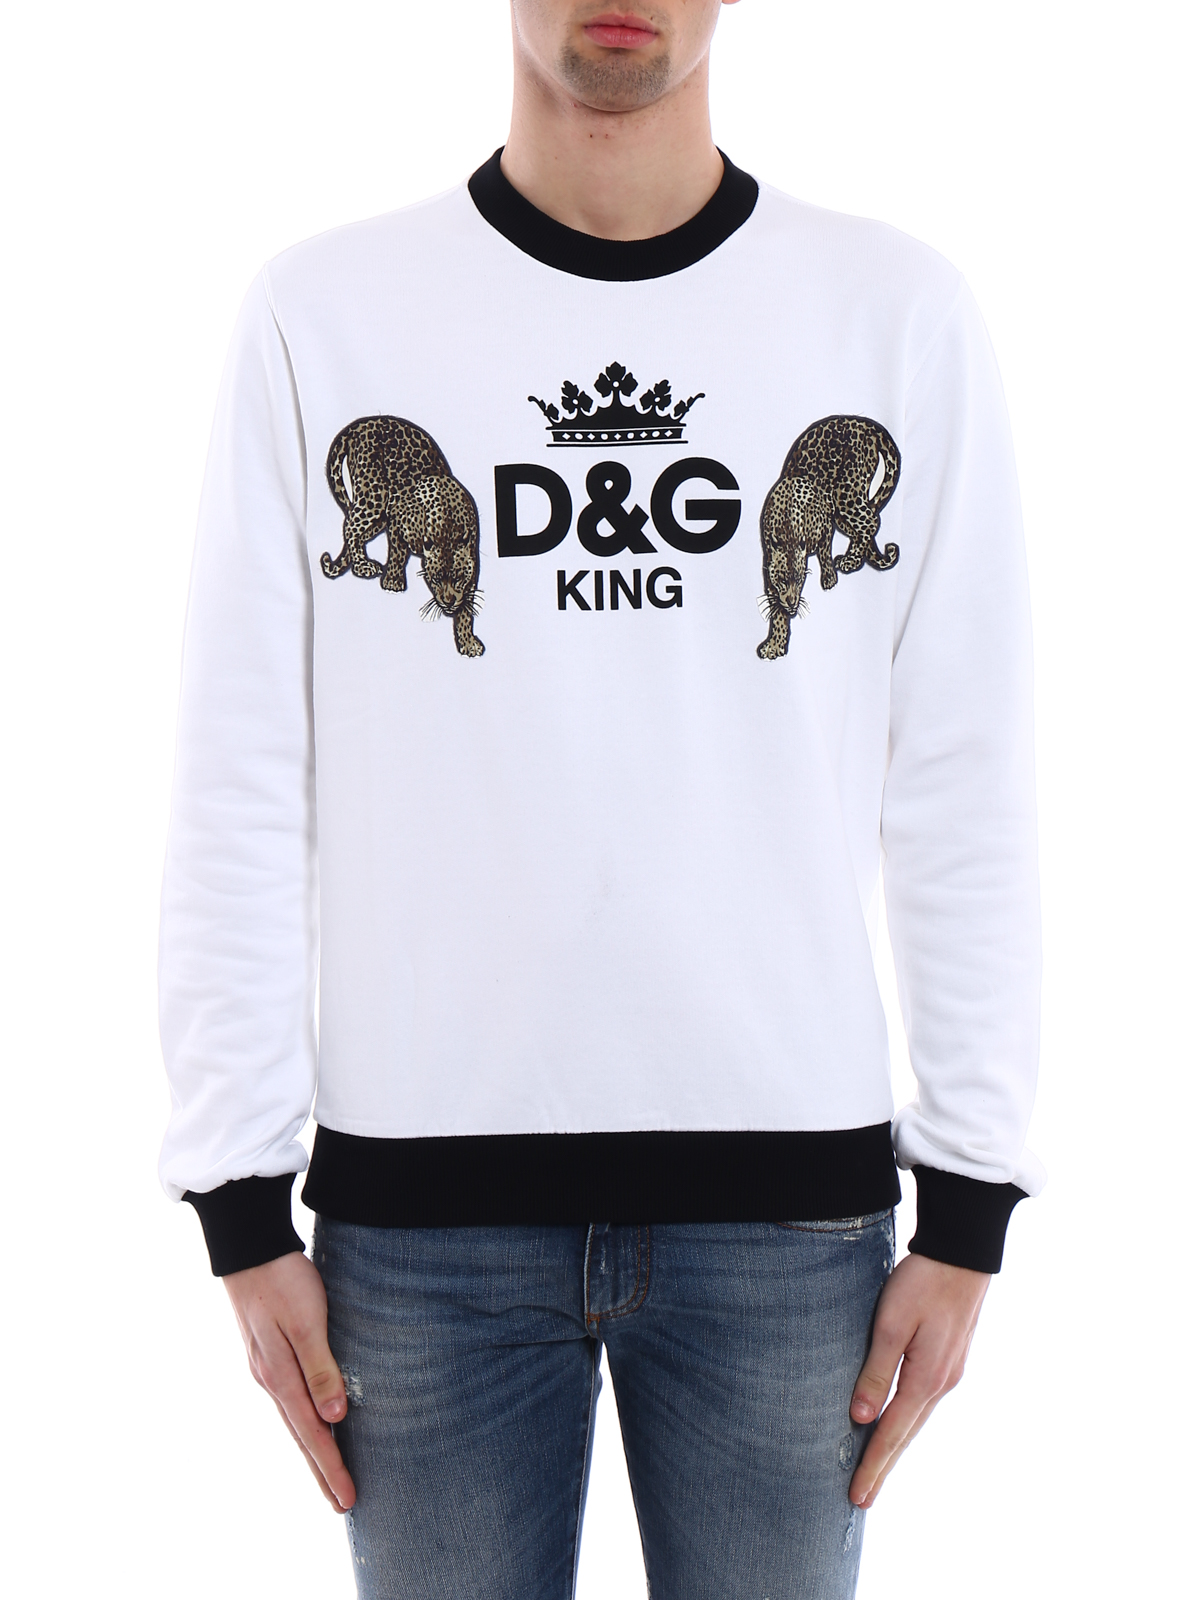 king d&g